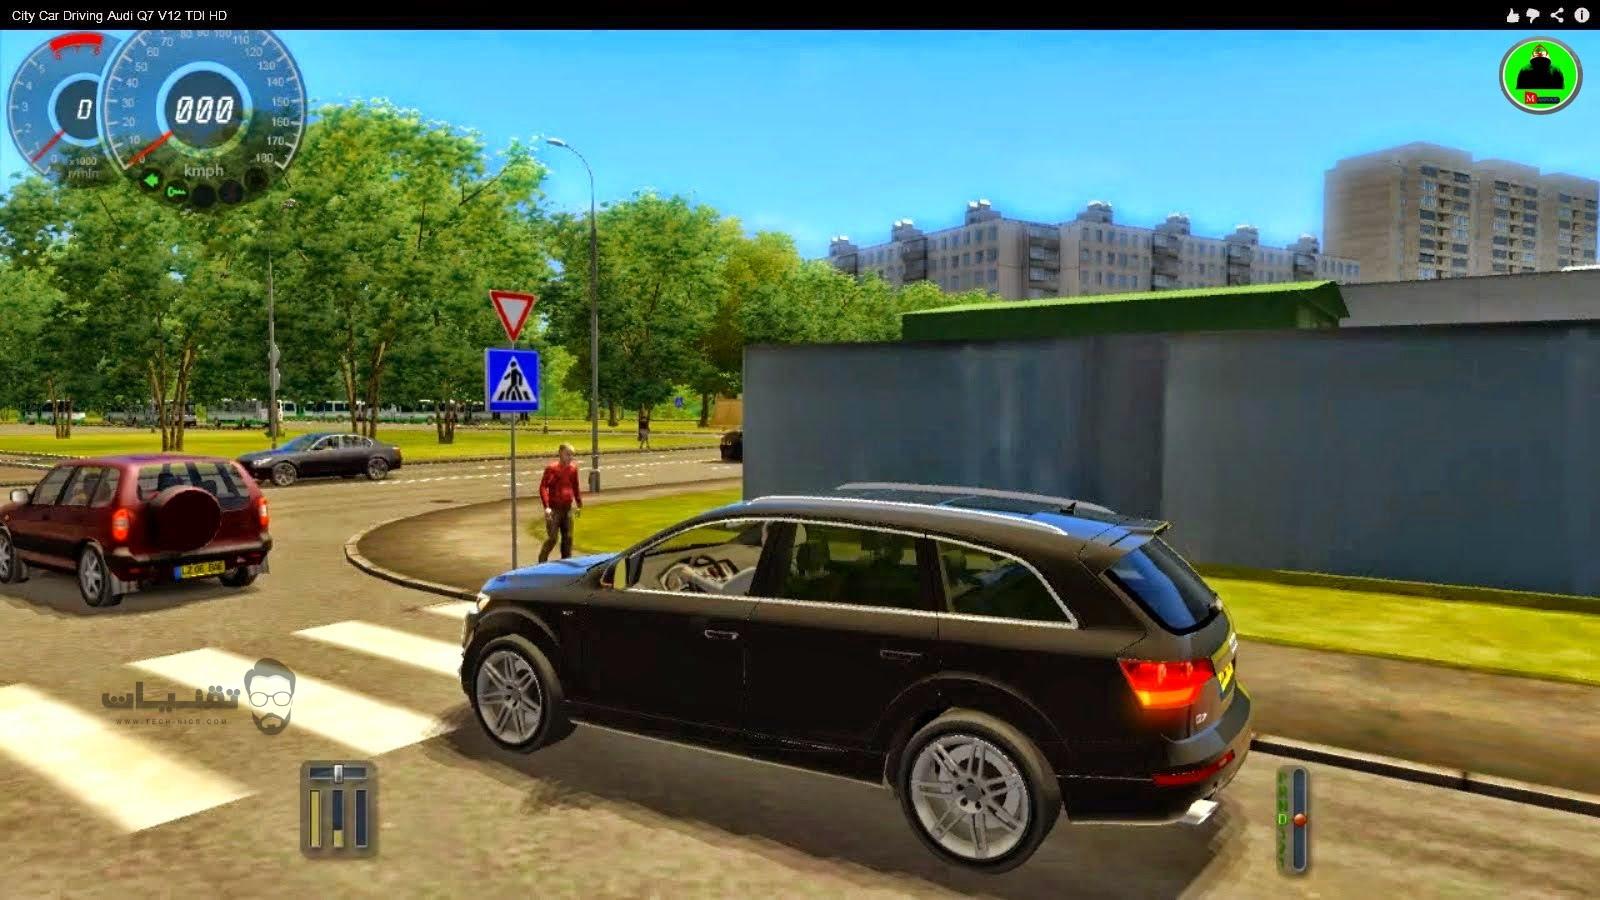 تحميل لعبة city car driving لسباق السيارات للهواتف الذكية والاندرويد